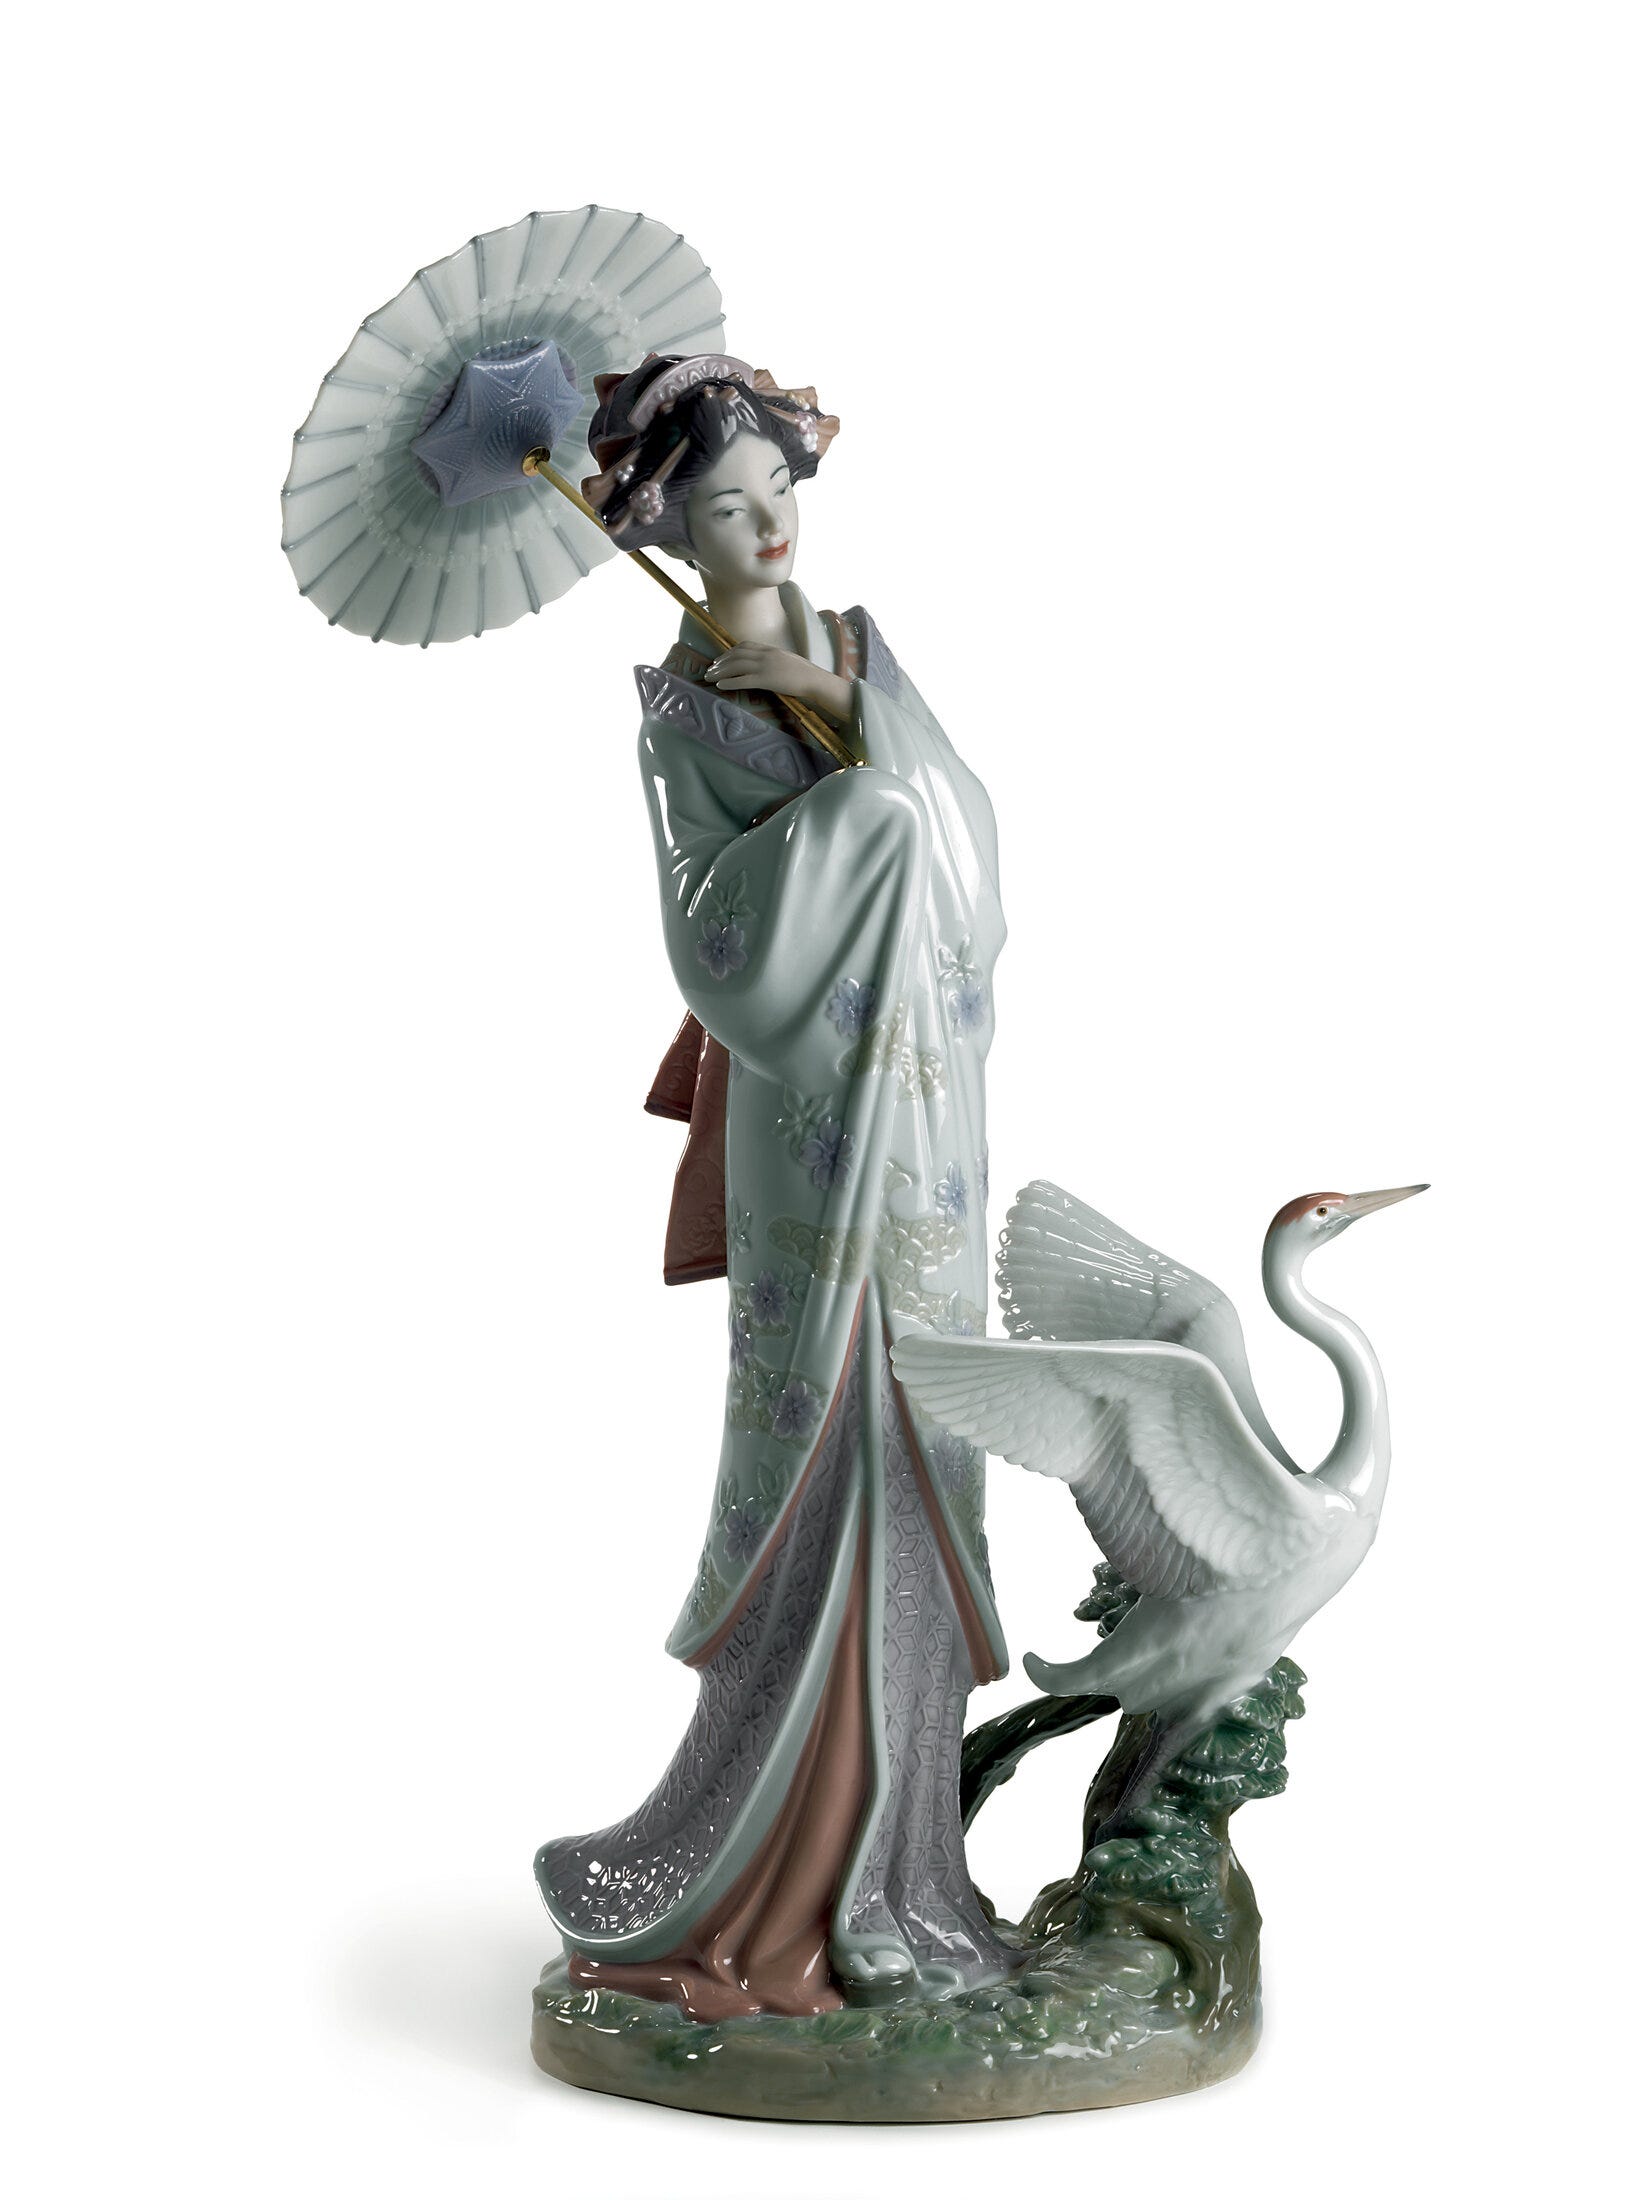 Figurina di donna ritratto giapponese